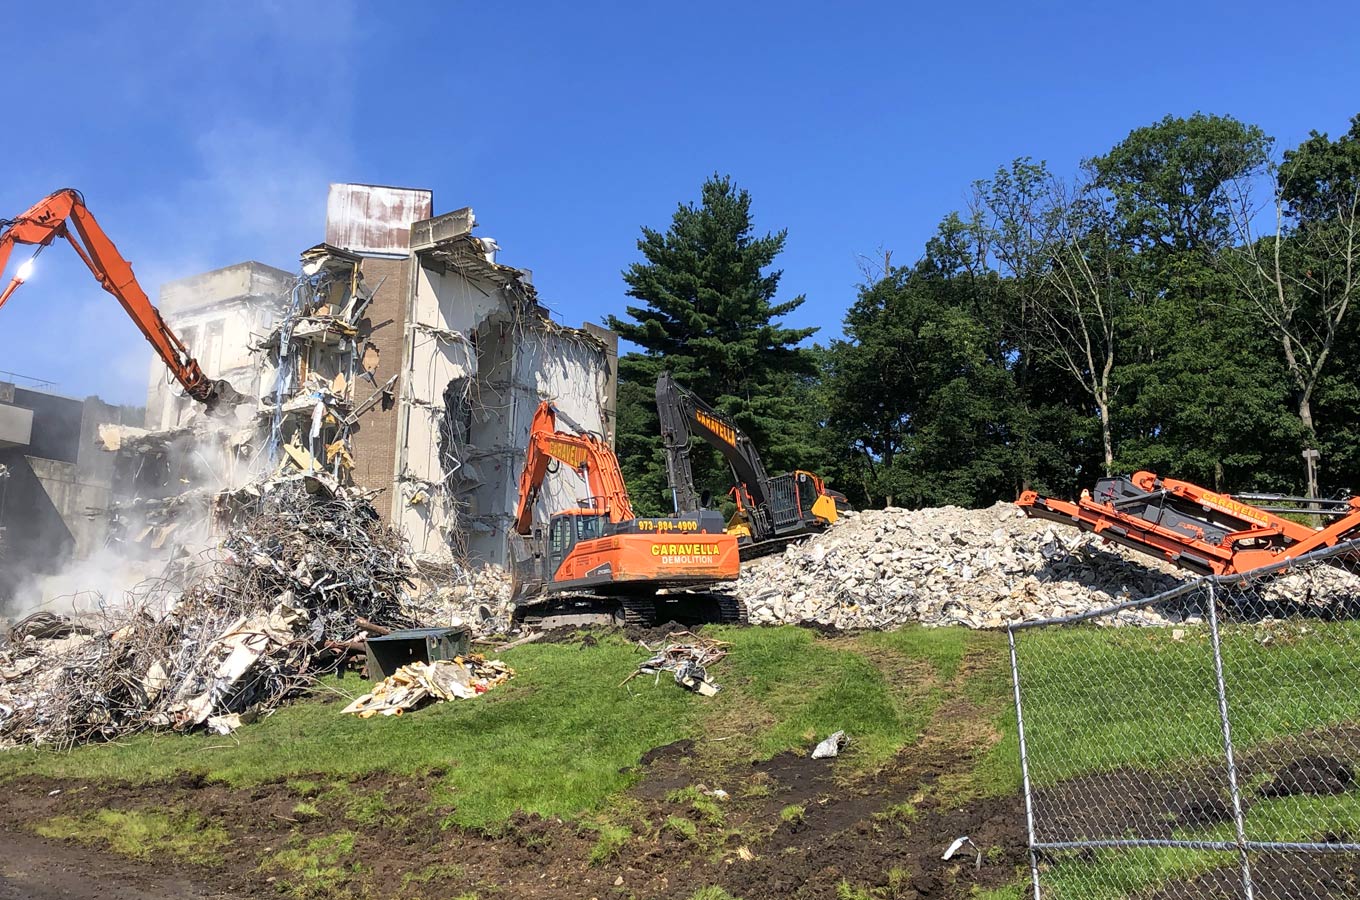 Demolition Services in Bergen County, NJ | Caravella Demolition